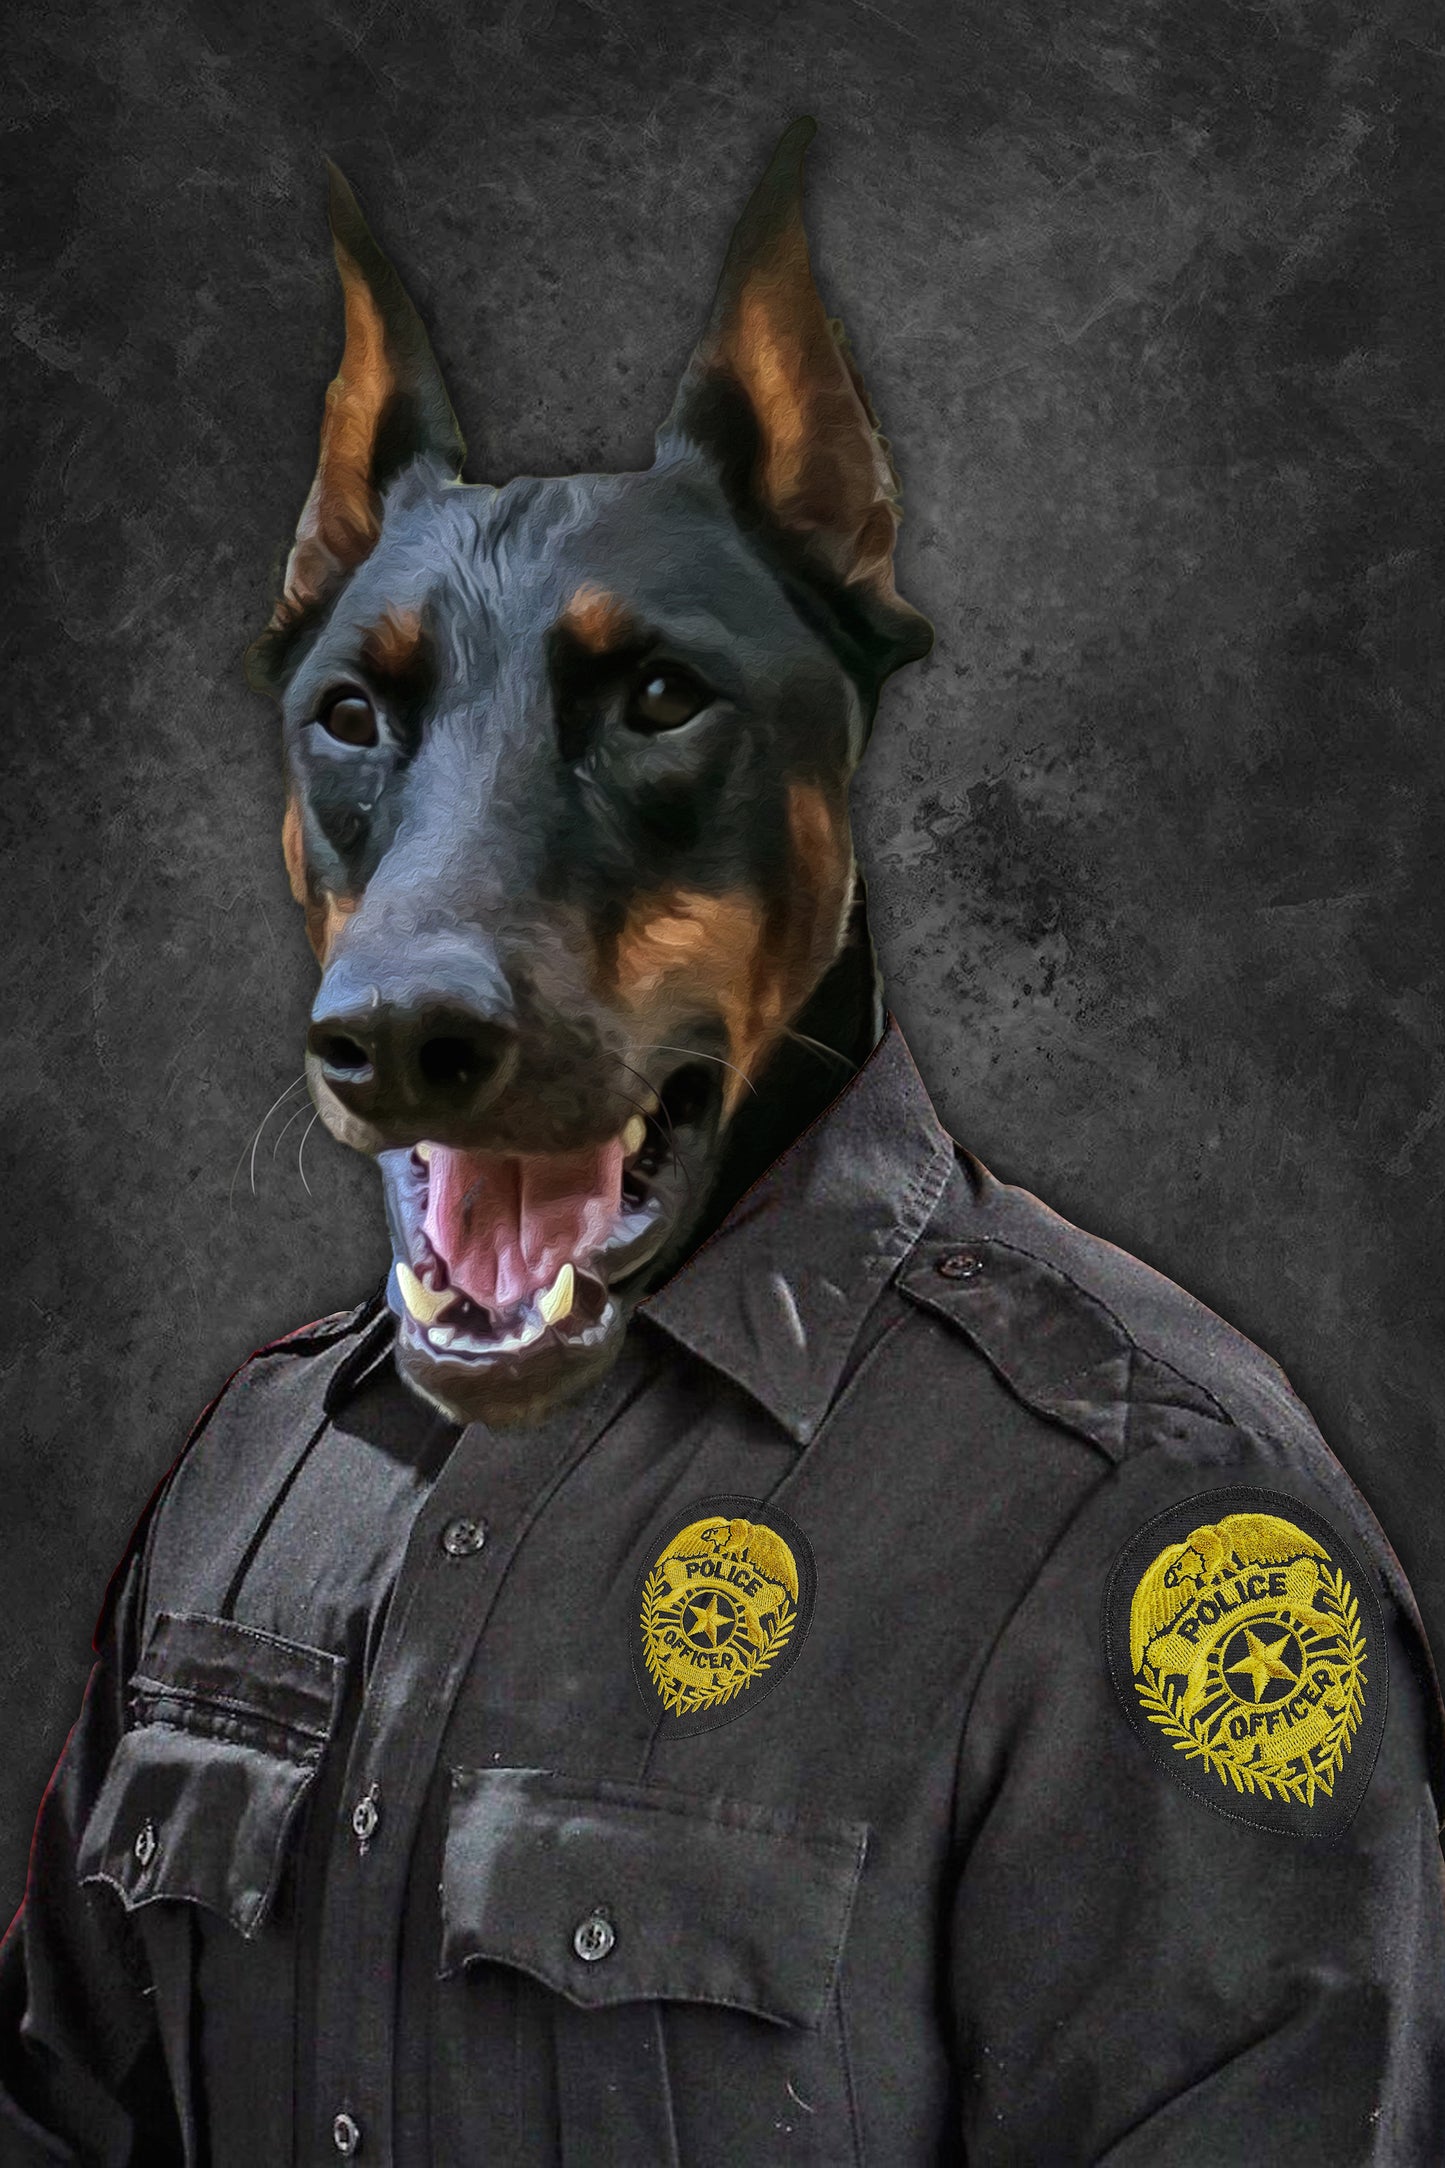 The Police Custom Pet Portrait Canvas - Noble Pawtrait